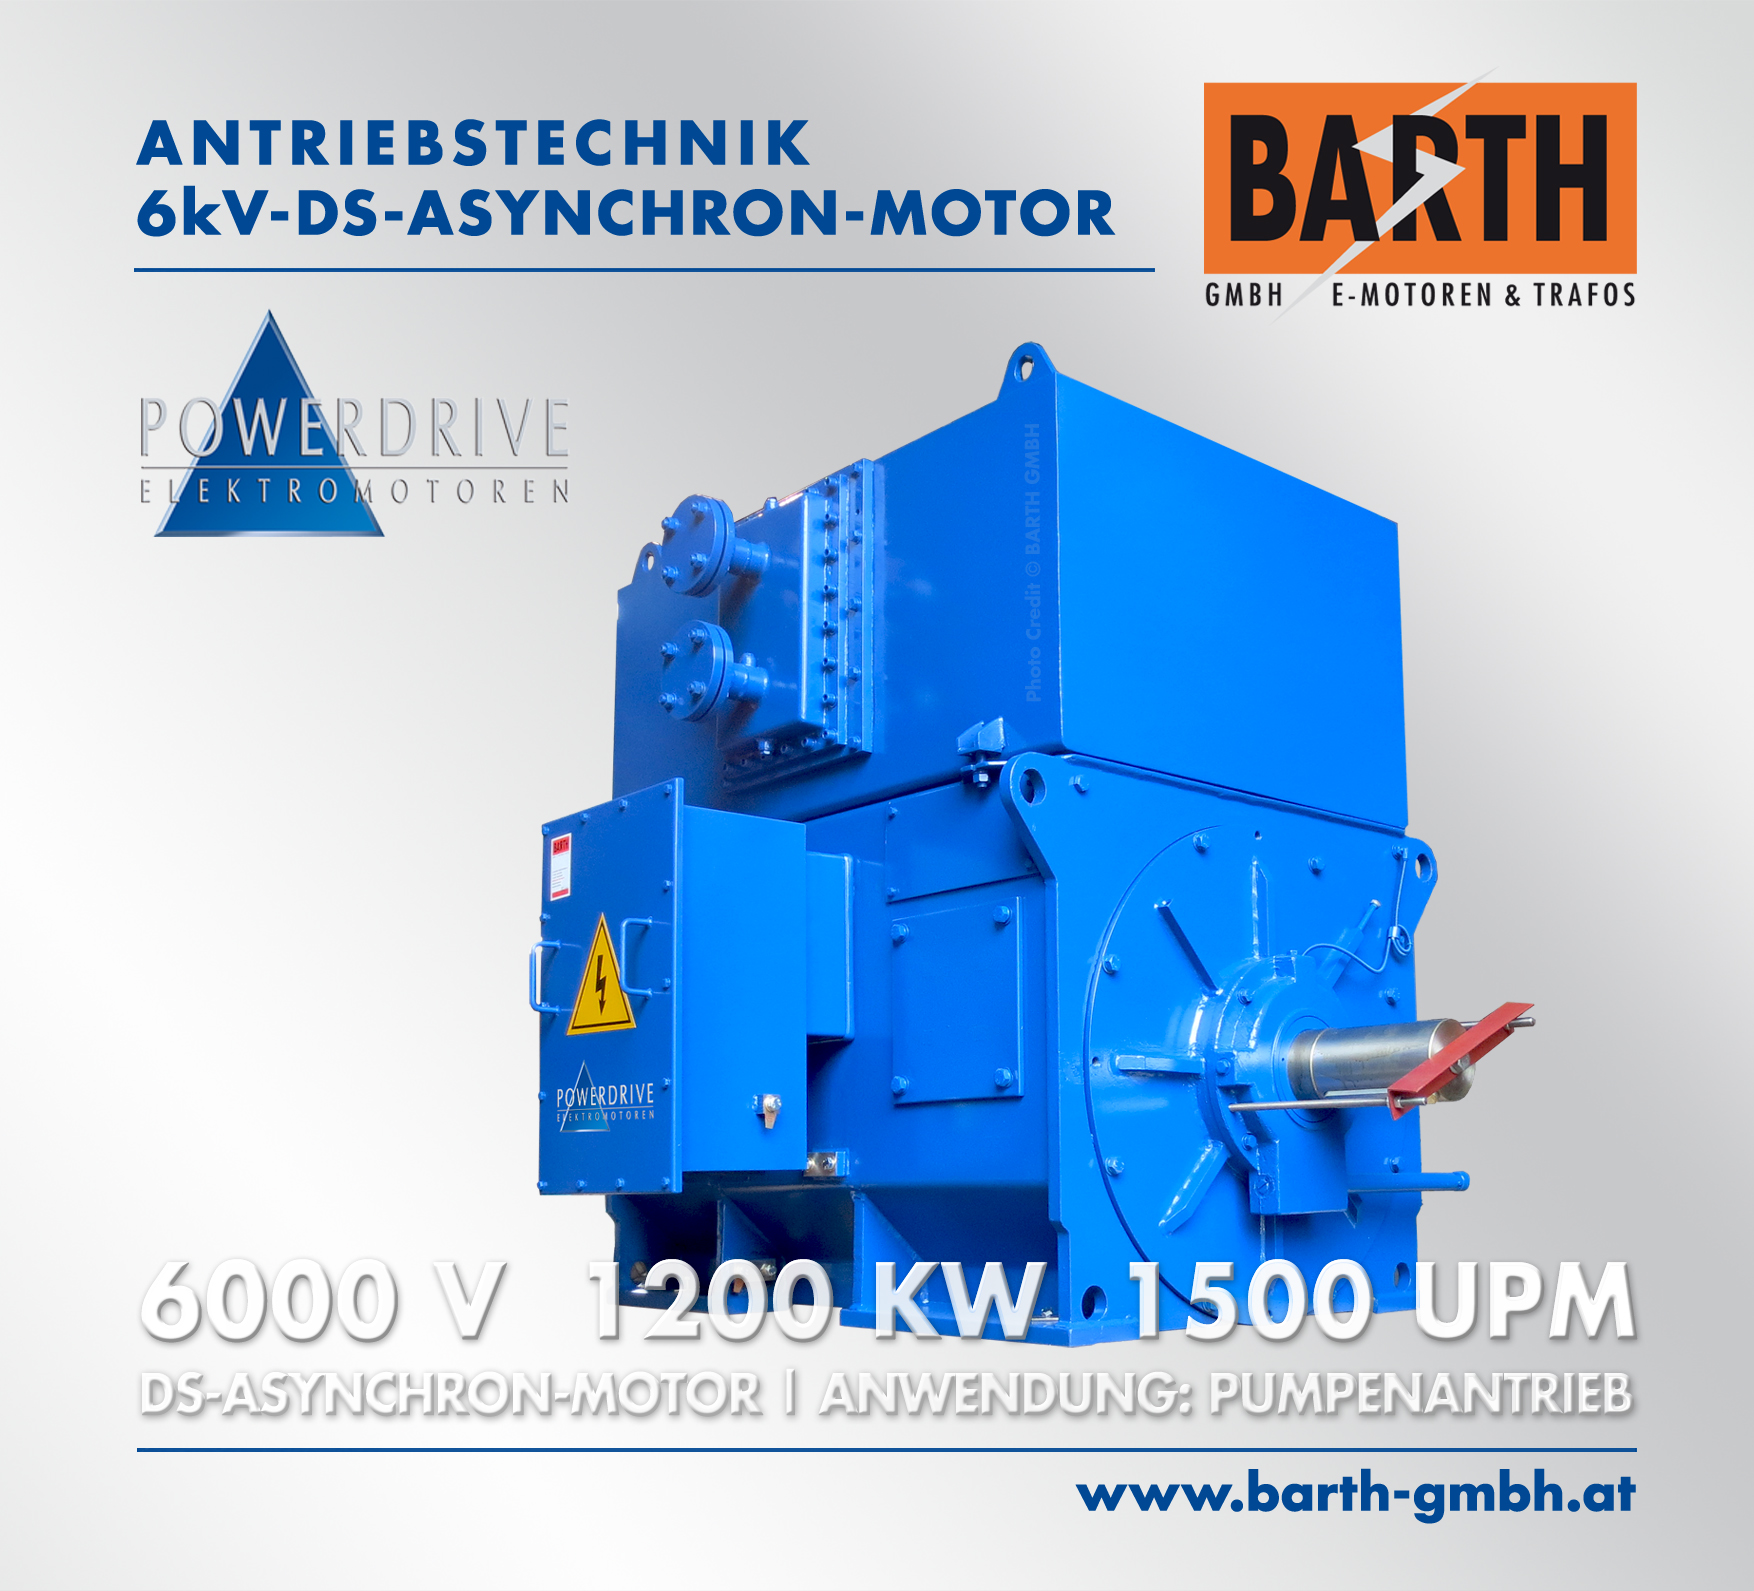 Threephase-Asynchronous-Motor: 6 kV, 1200 kW, 1500 rpm